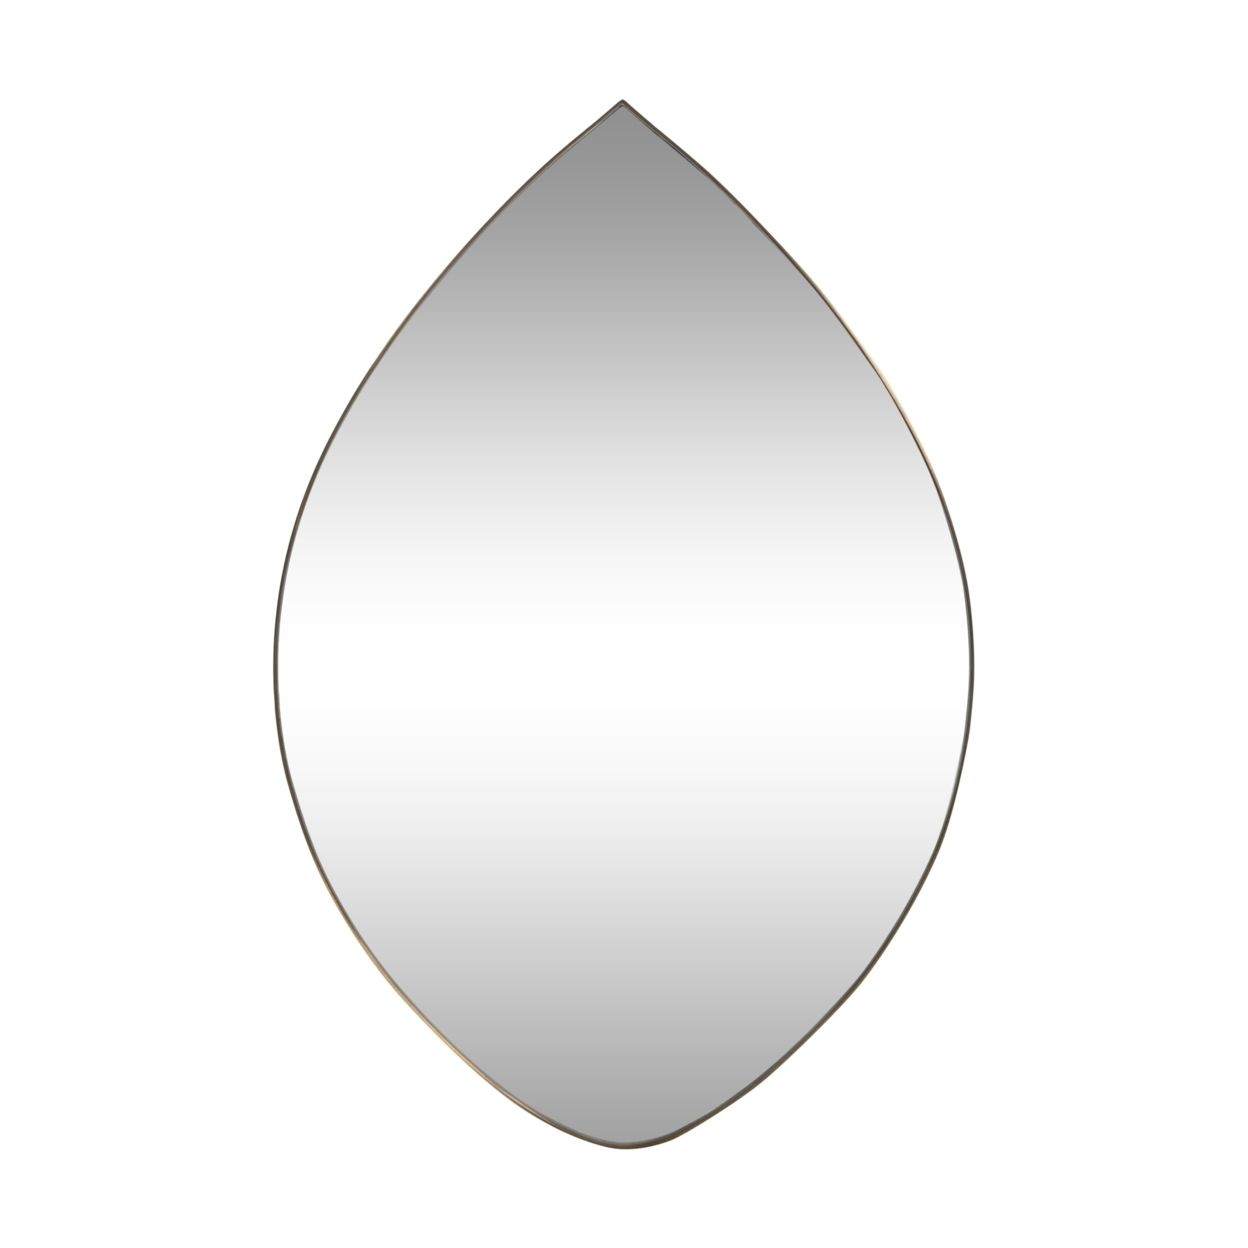 Boyette Contemporary Teardrop Wall Mirror